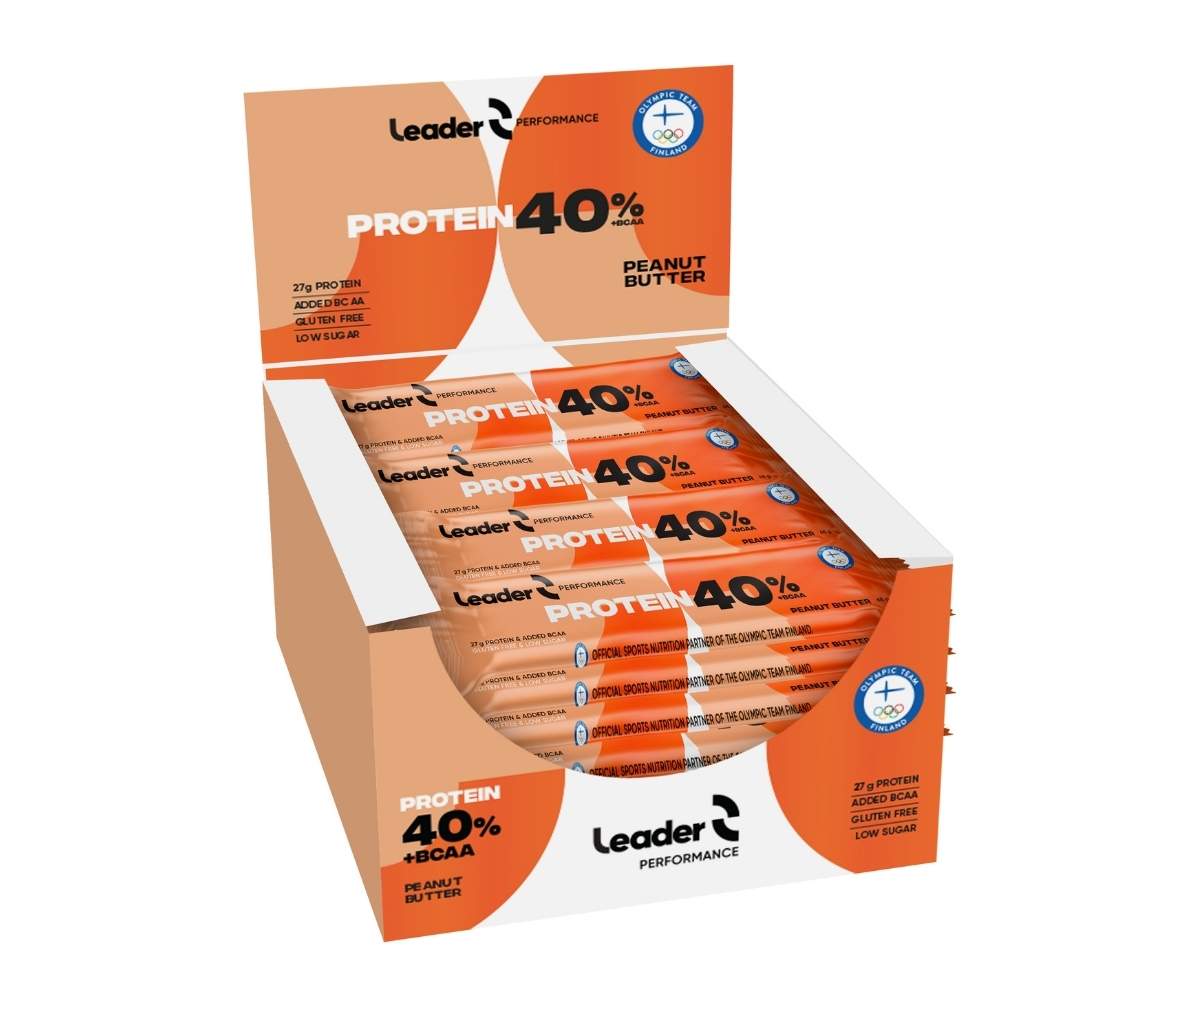 24 kpl Leader 40 % Protein + BCAA Proteiinipatukka, Peanut Butter